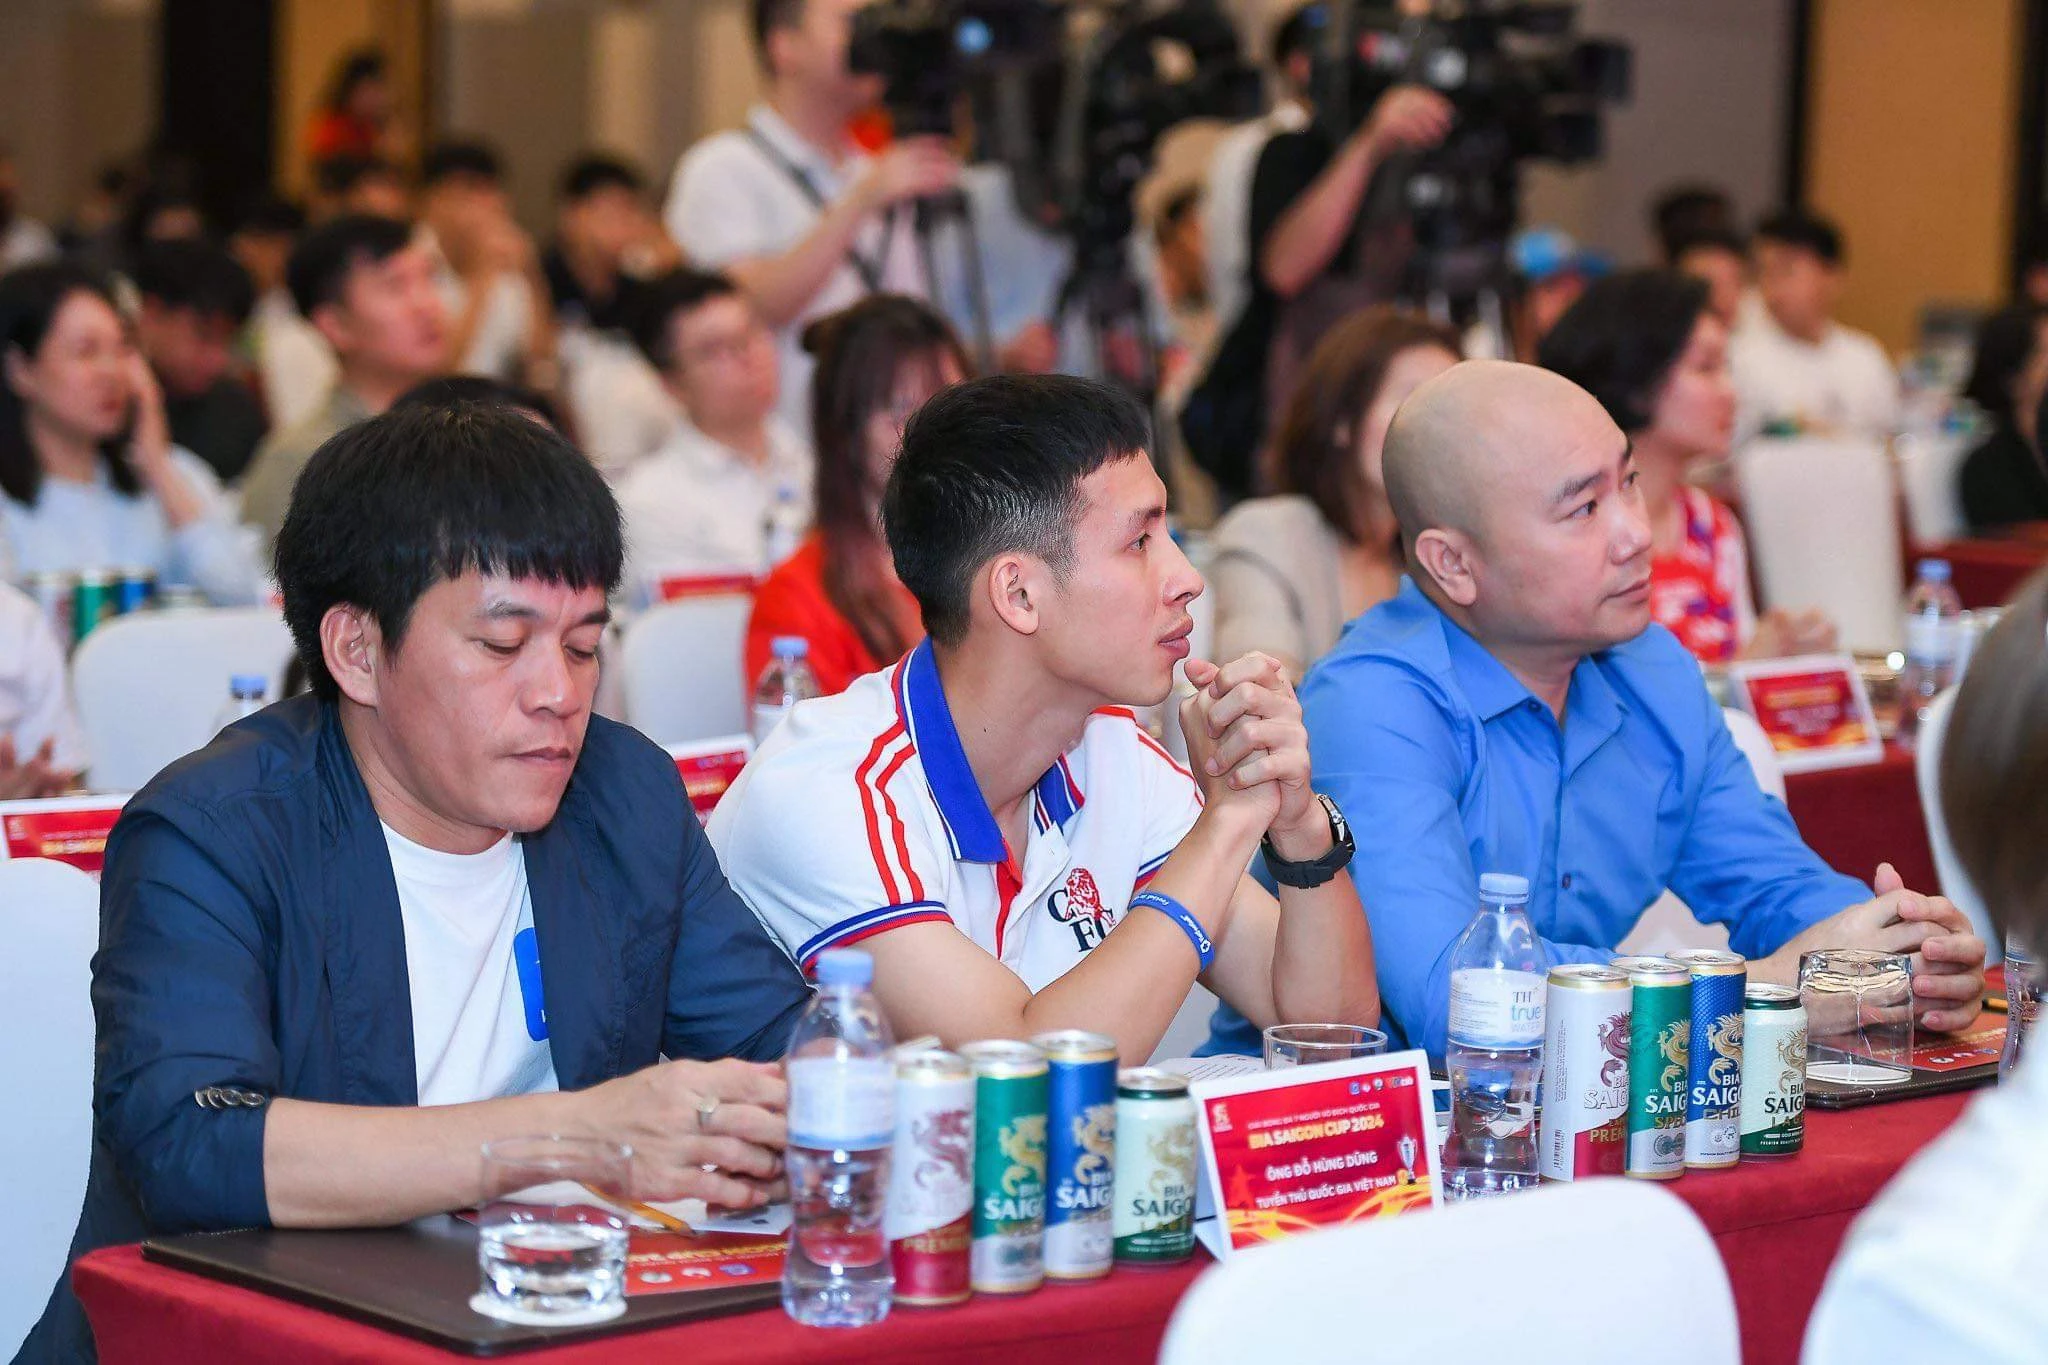 HLV Hoàng Anh Tuấn, cầu thủ Hùng Dũng ấn tượng với giải bóng đá 7 người VĐQG